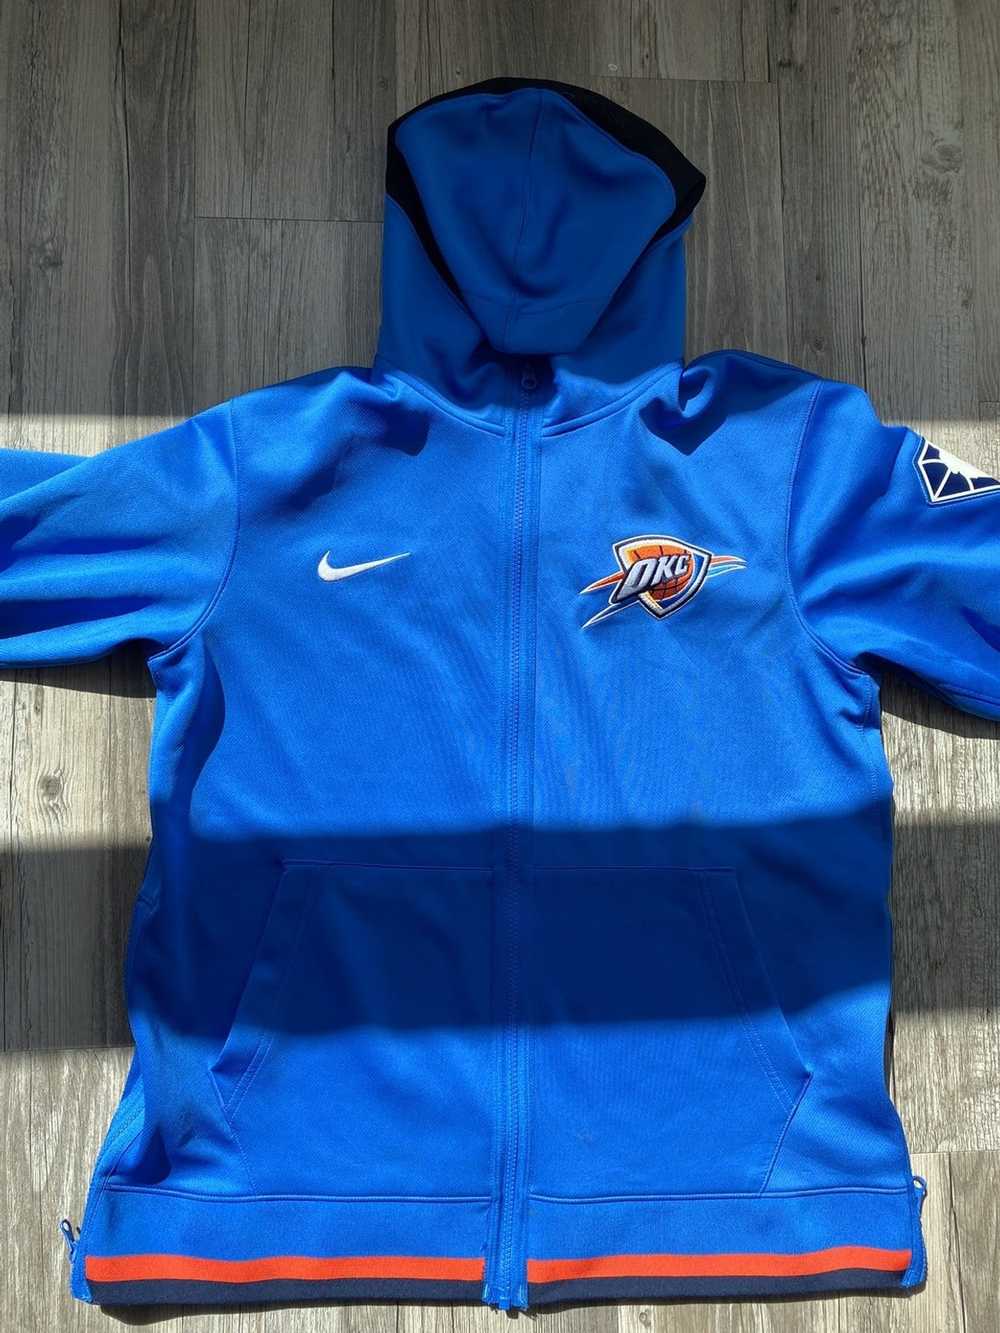 NBA × Nike Nike NBA on court zip up hoodie - image 1